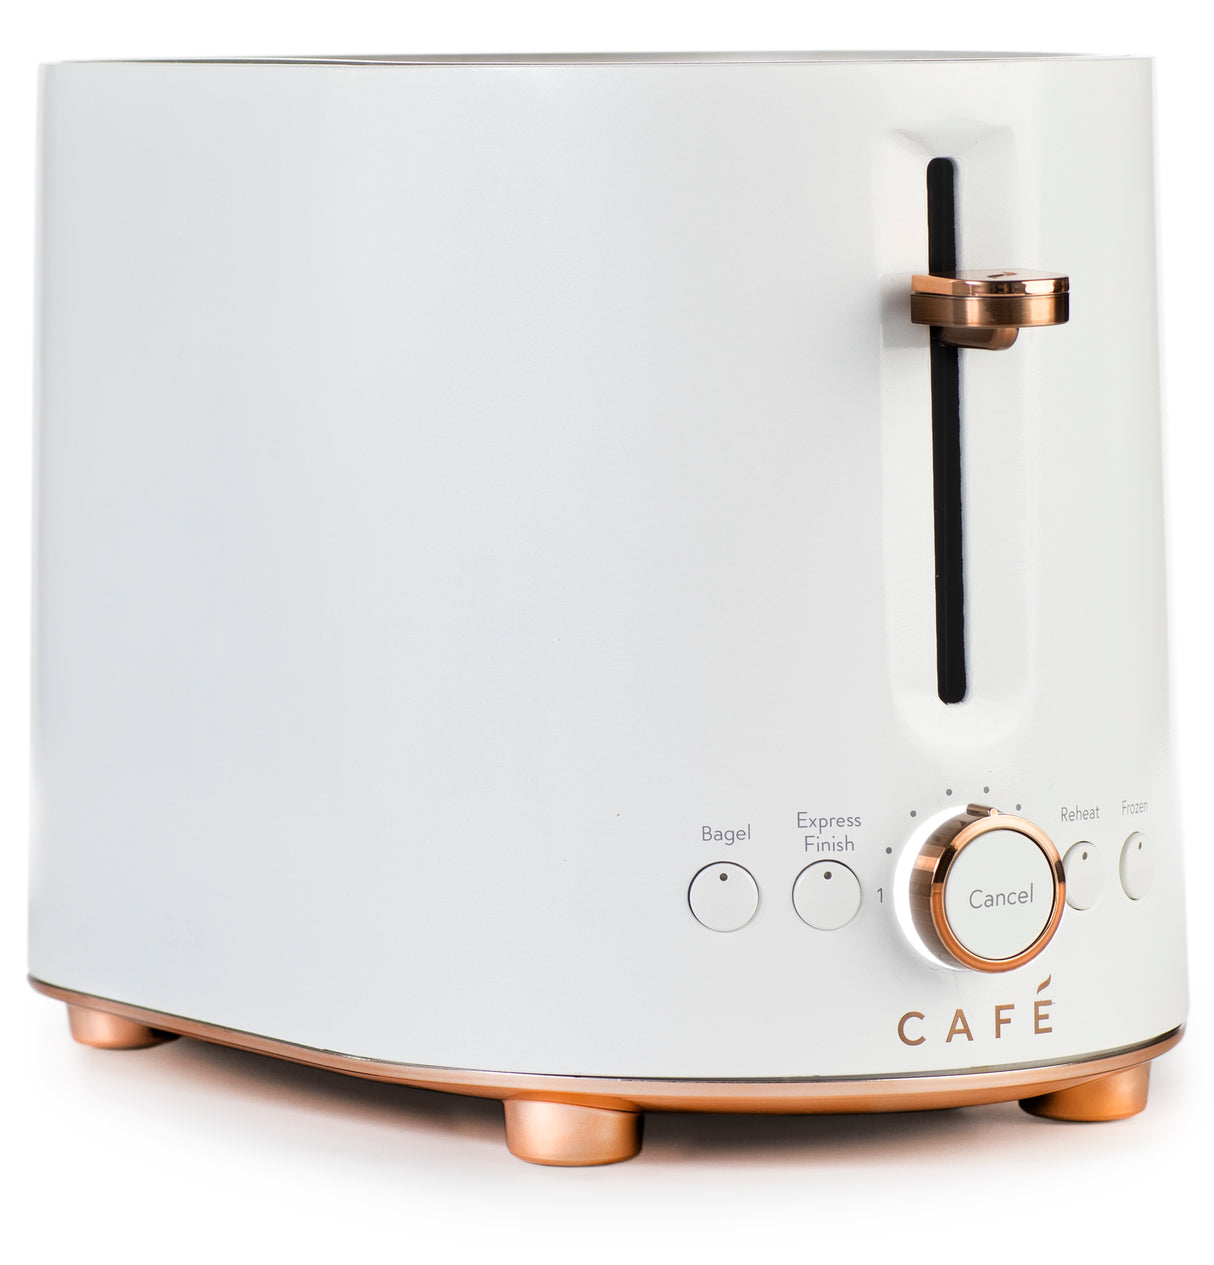 Caf(eback)(TM) Express Finish Toaster - (C9TMA2S4PW3)